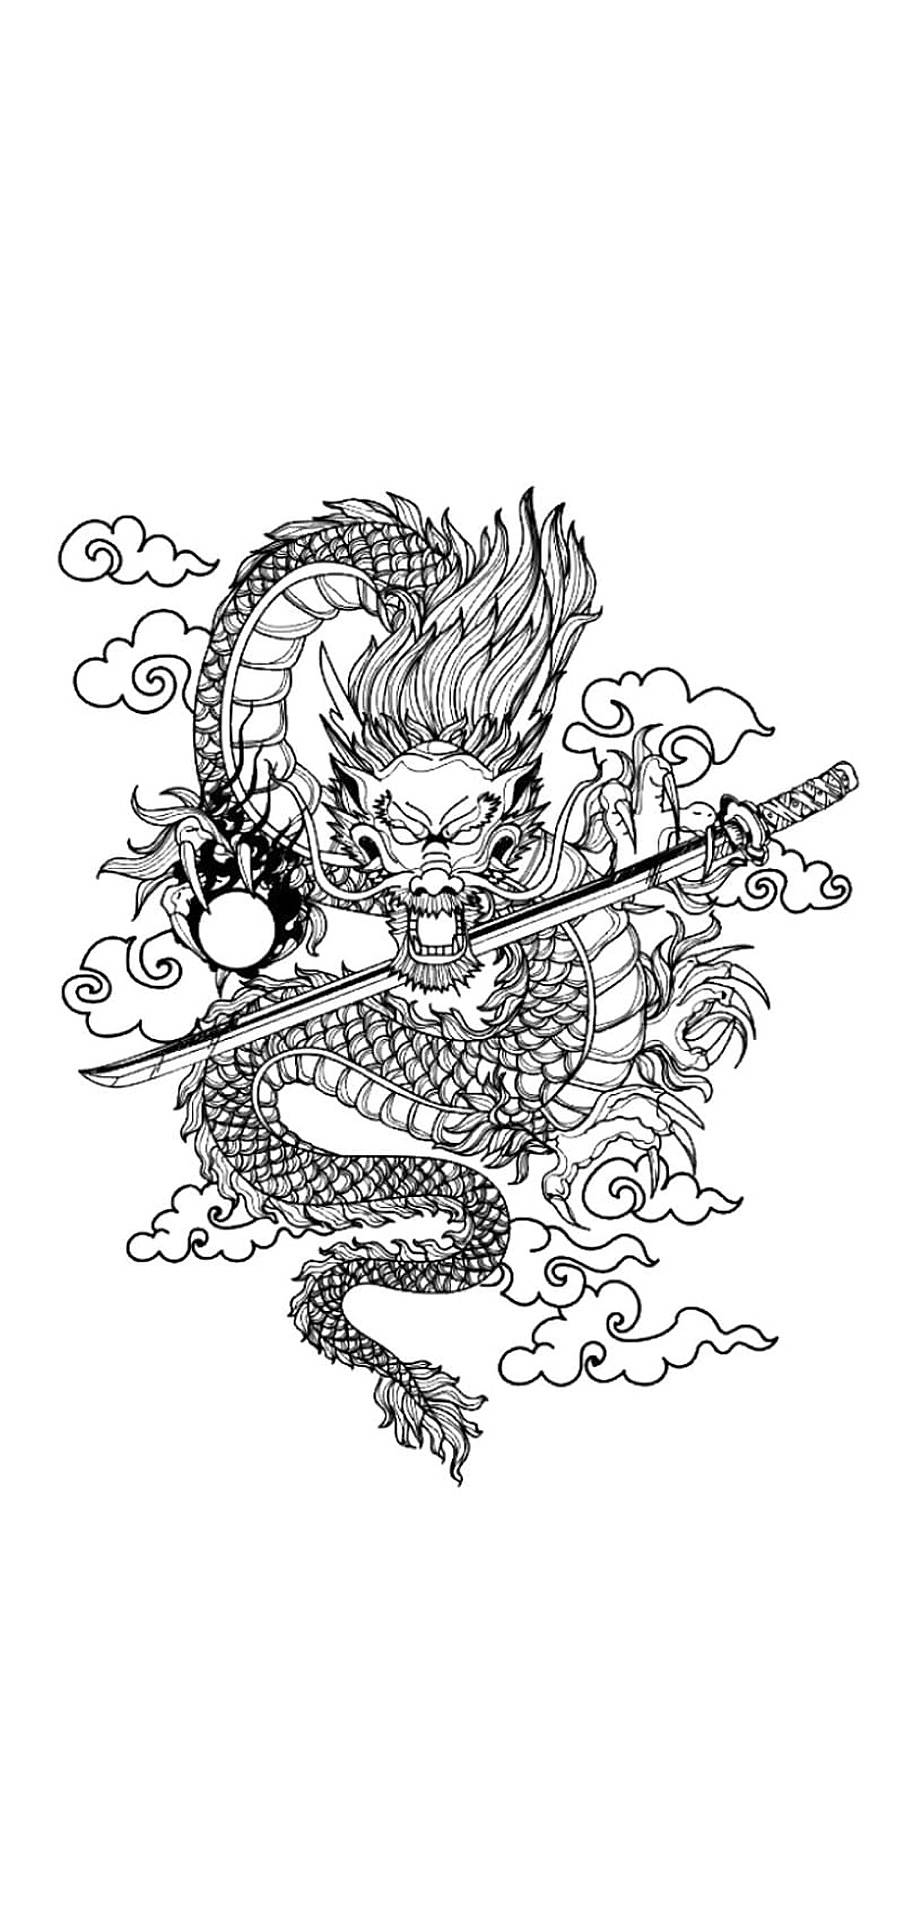 Minimalist dragon (Strength) dragon head original tribal tattoo design